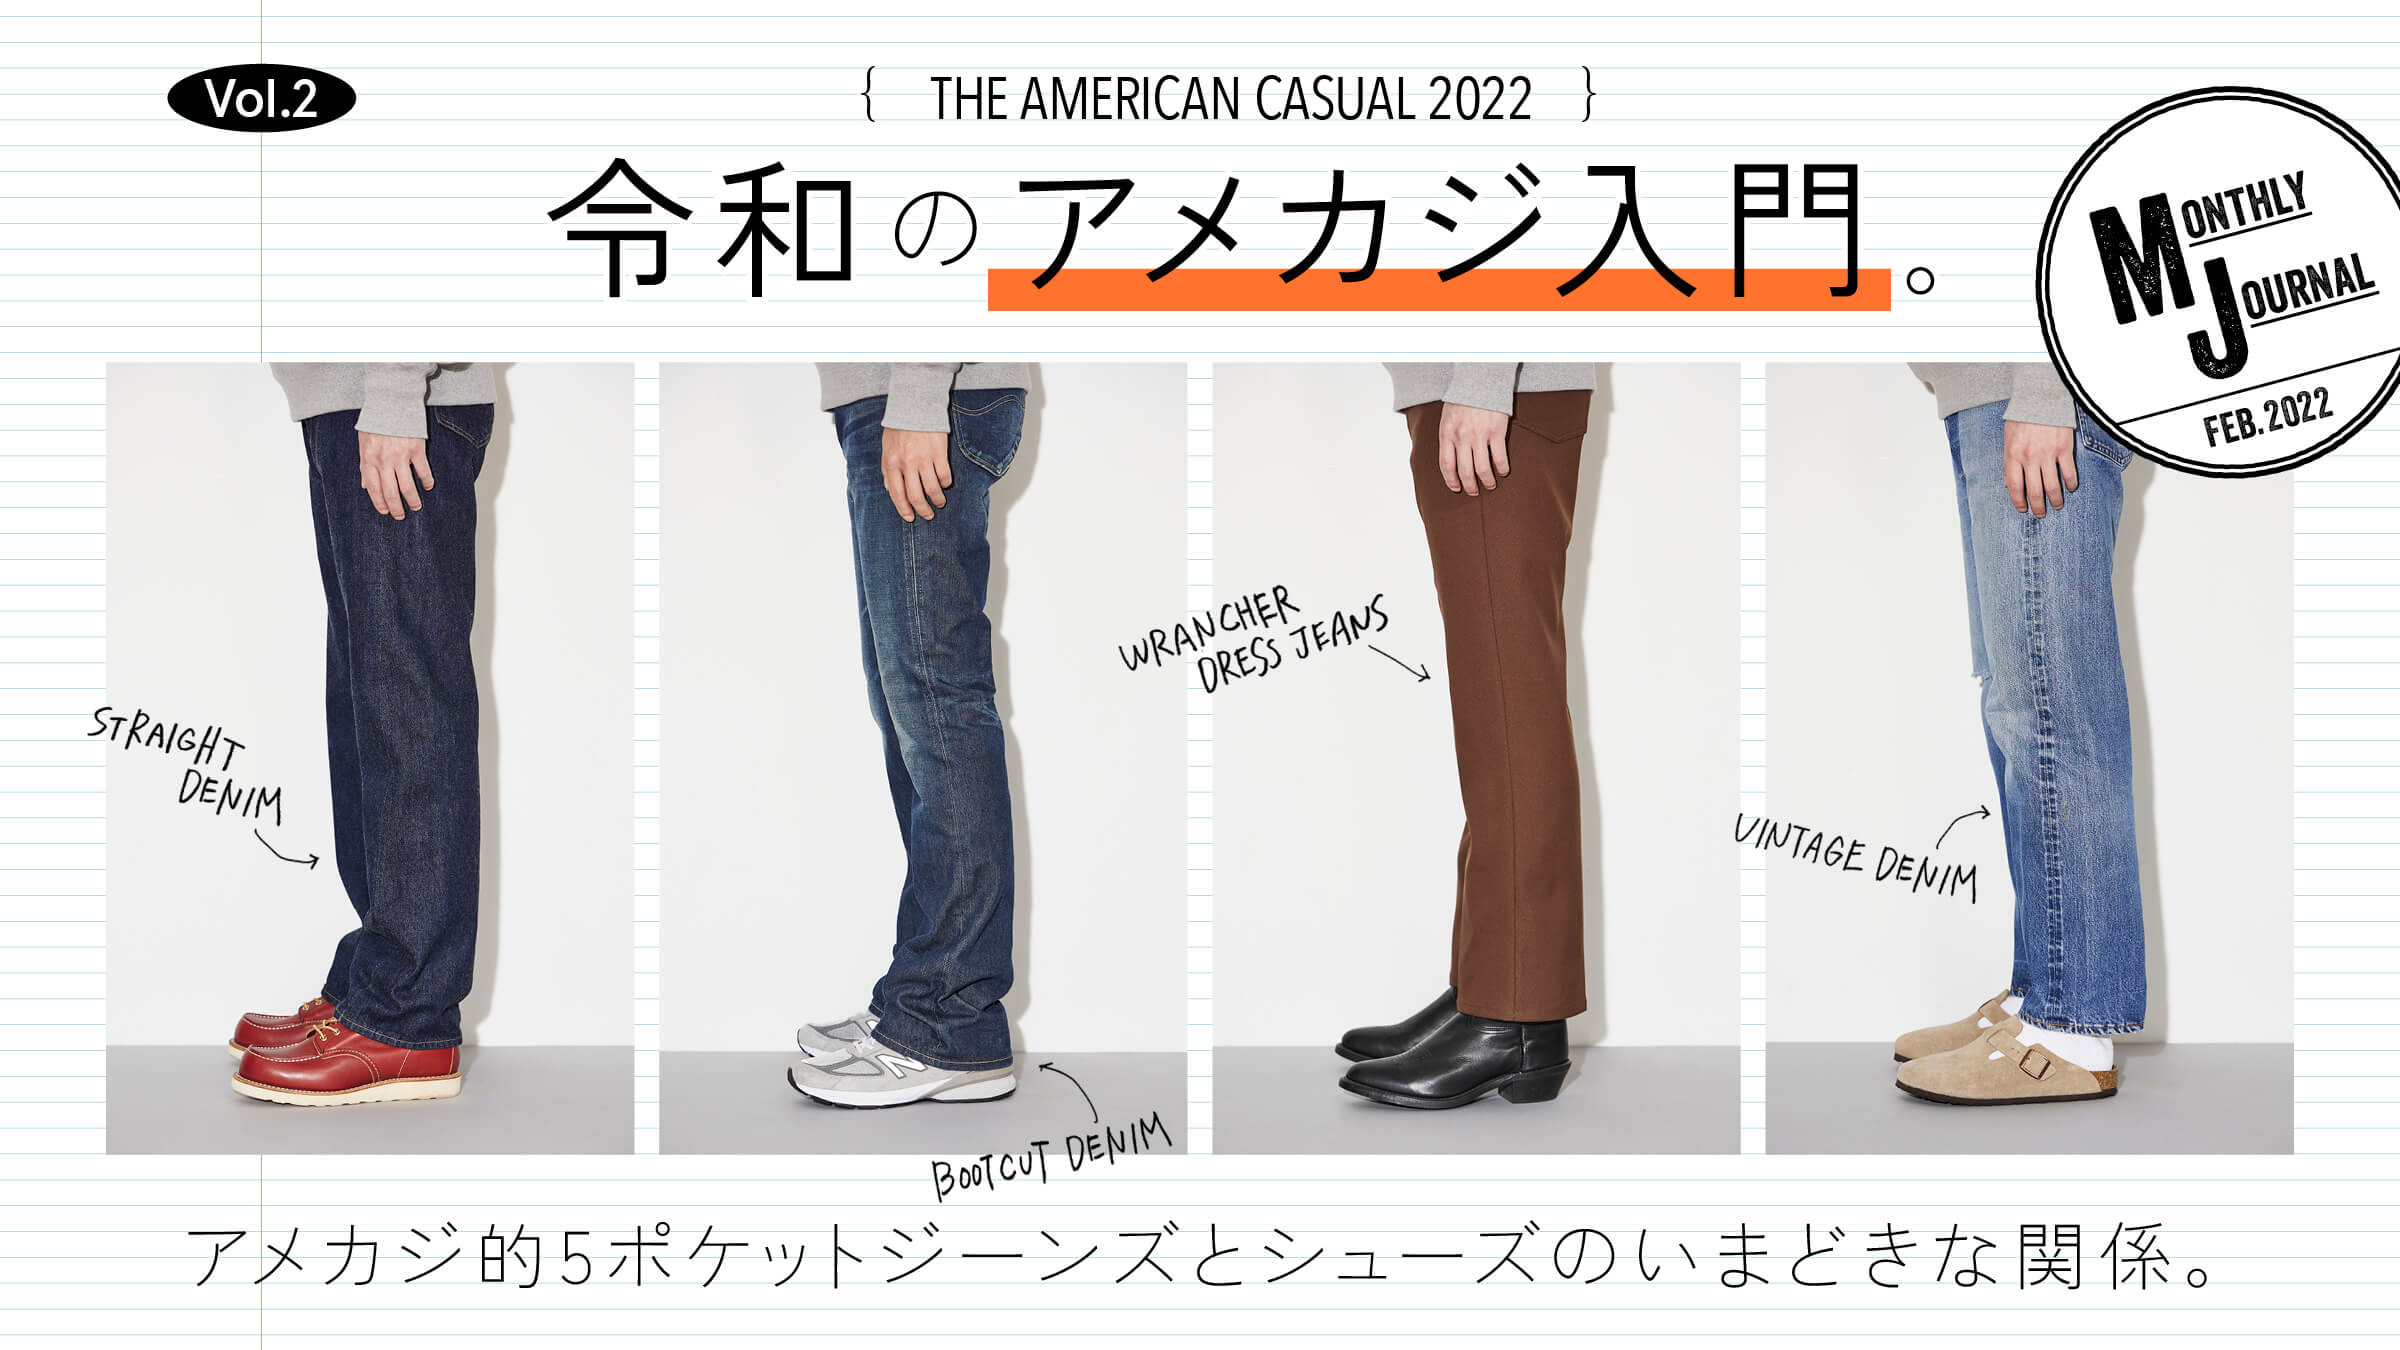 THE AMERICAN CASUAL 2022 Vol.2令和のアメカジ入門。アメカジ的5ポケットジーンズとシューズのいまどきな関係。